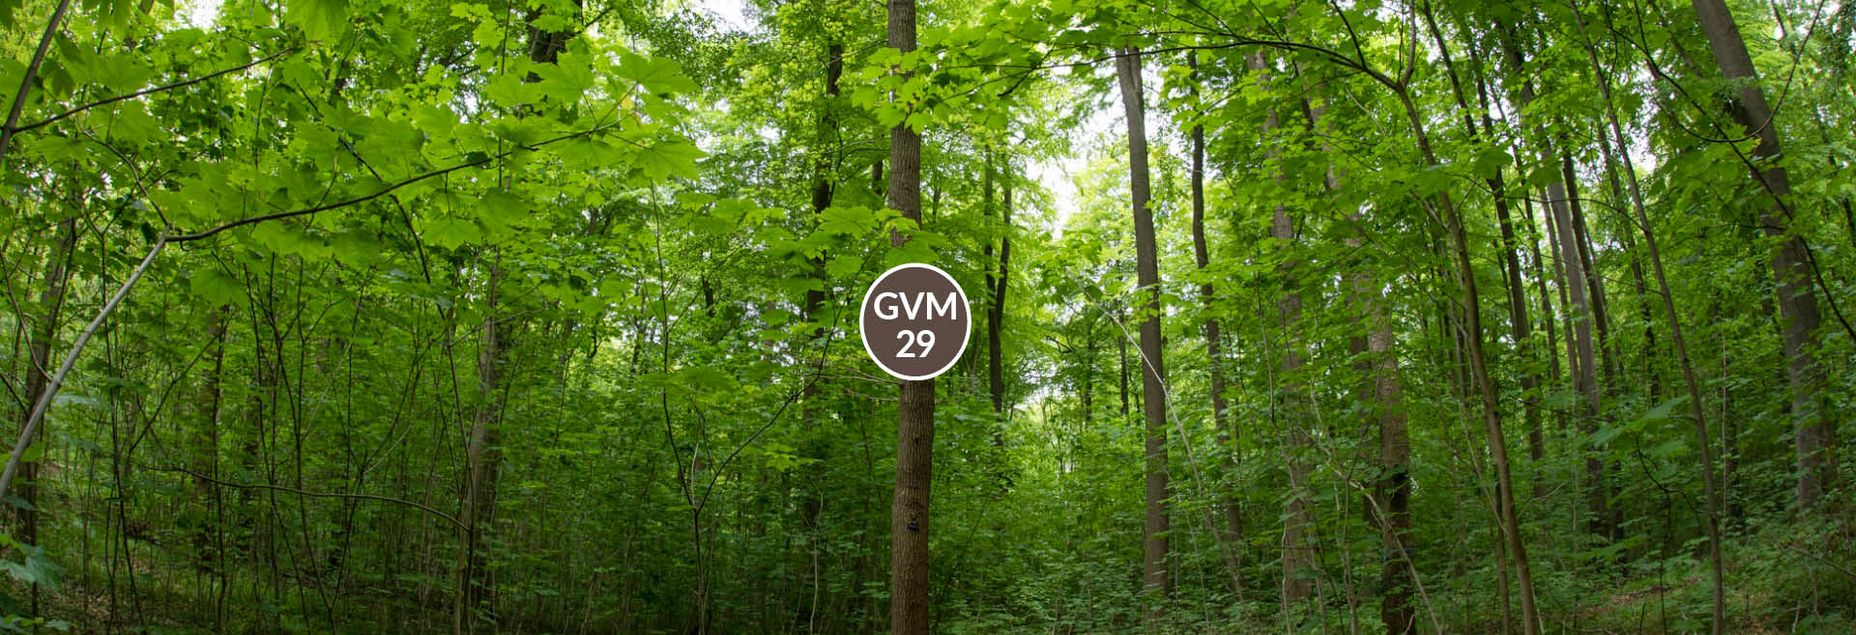 Baum GVM 29 - Fisheyeperspektive